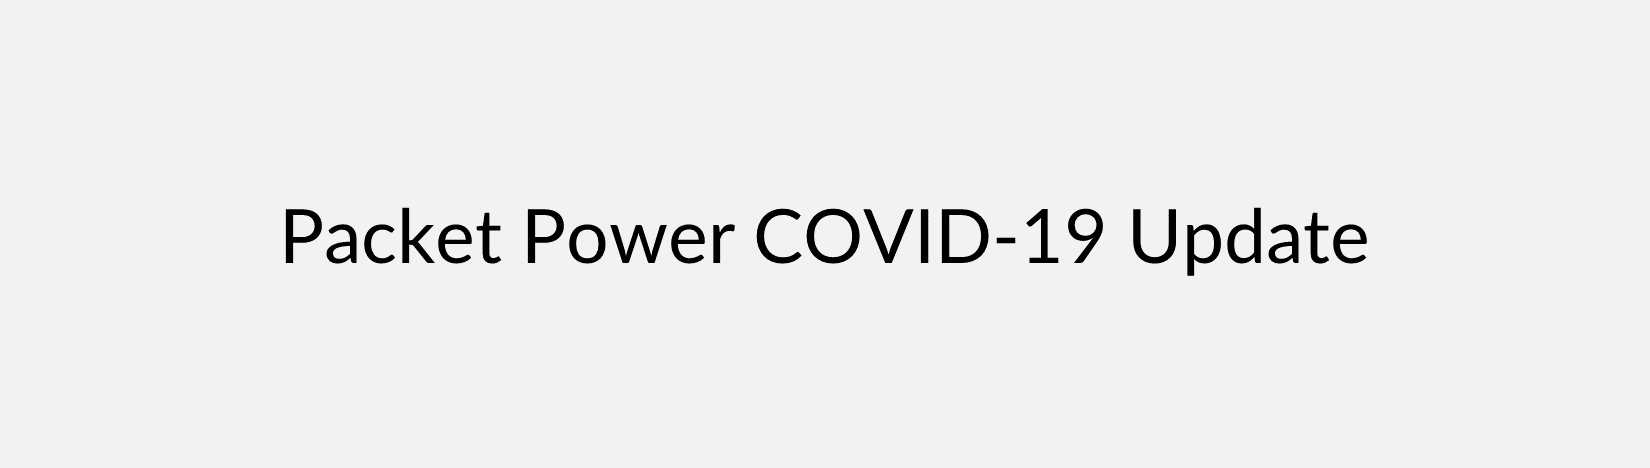 Packet Power Coronavirus Update